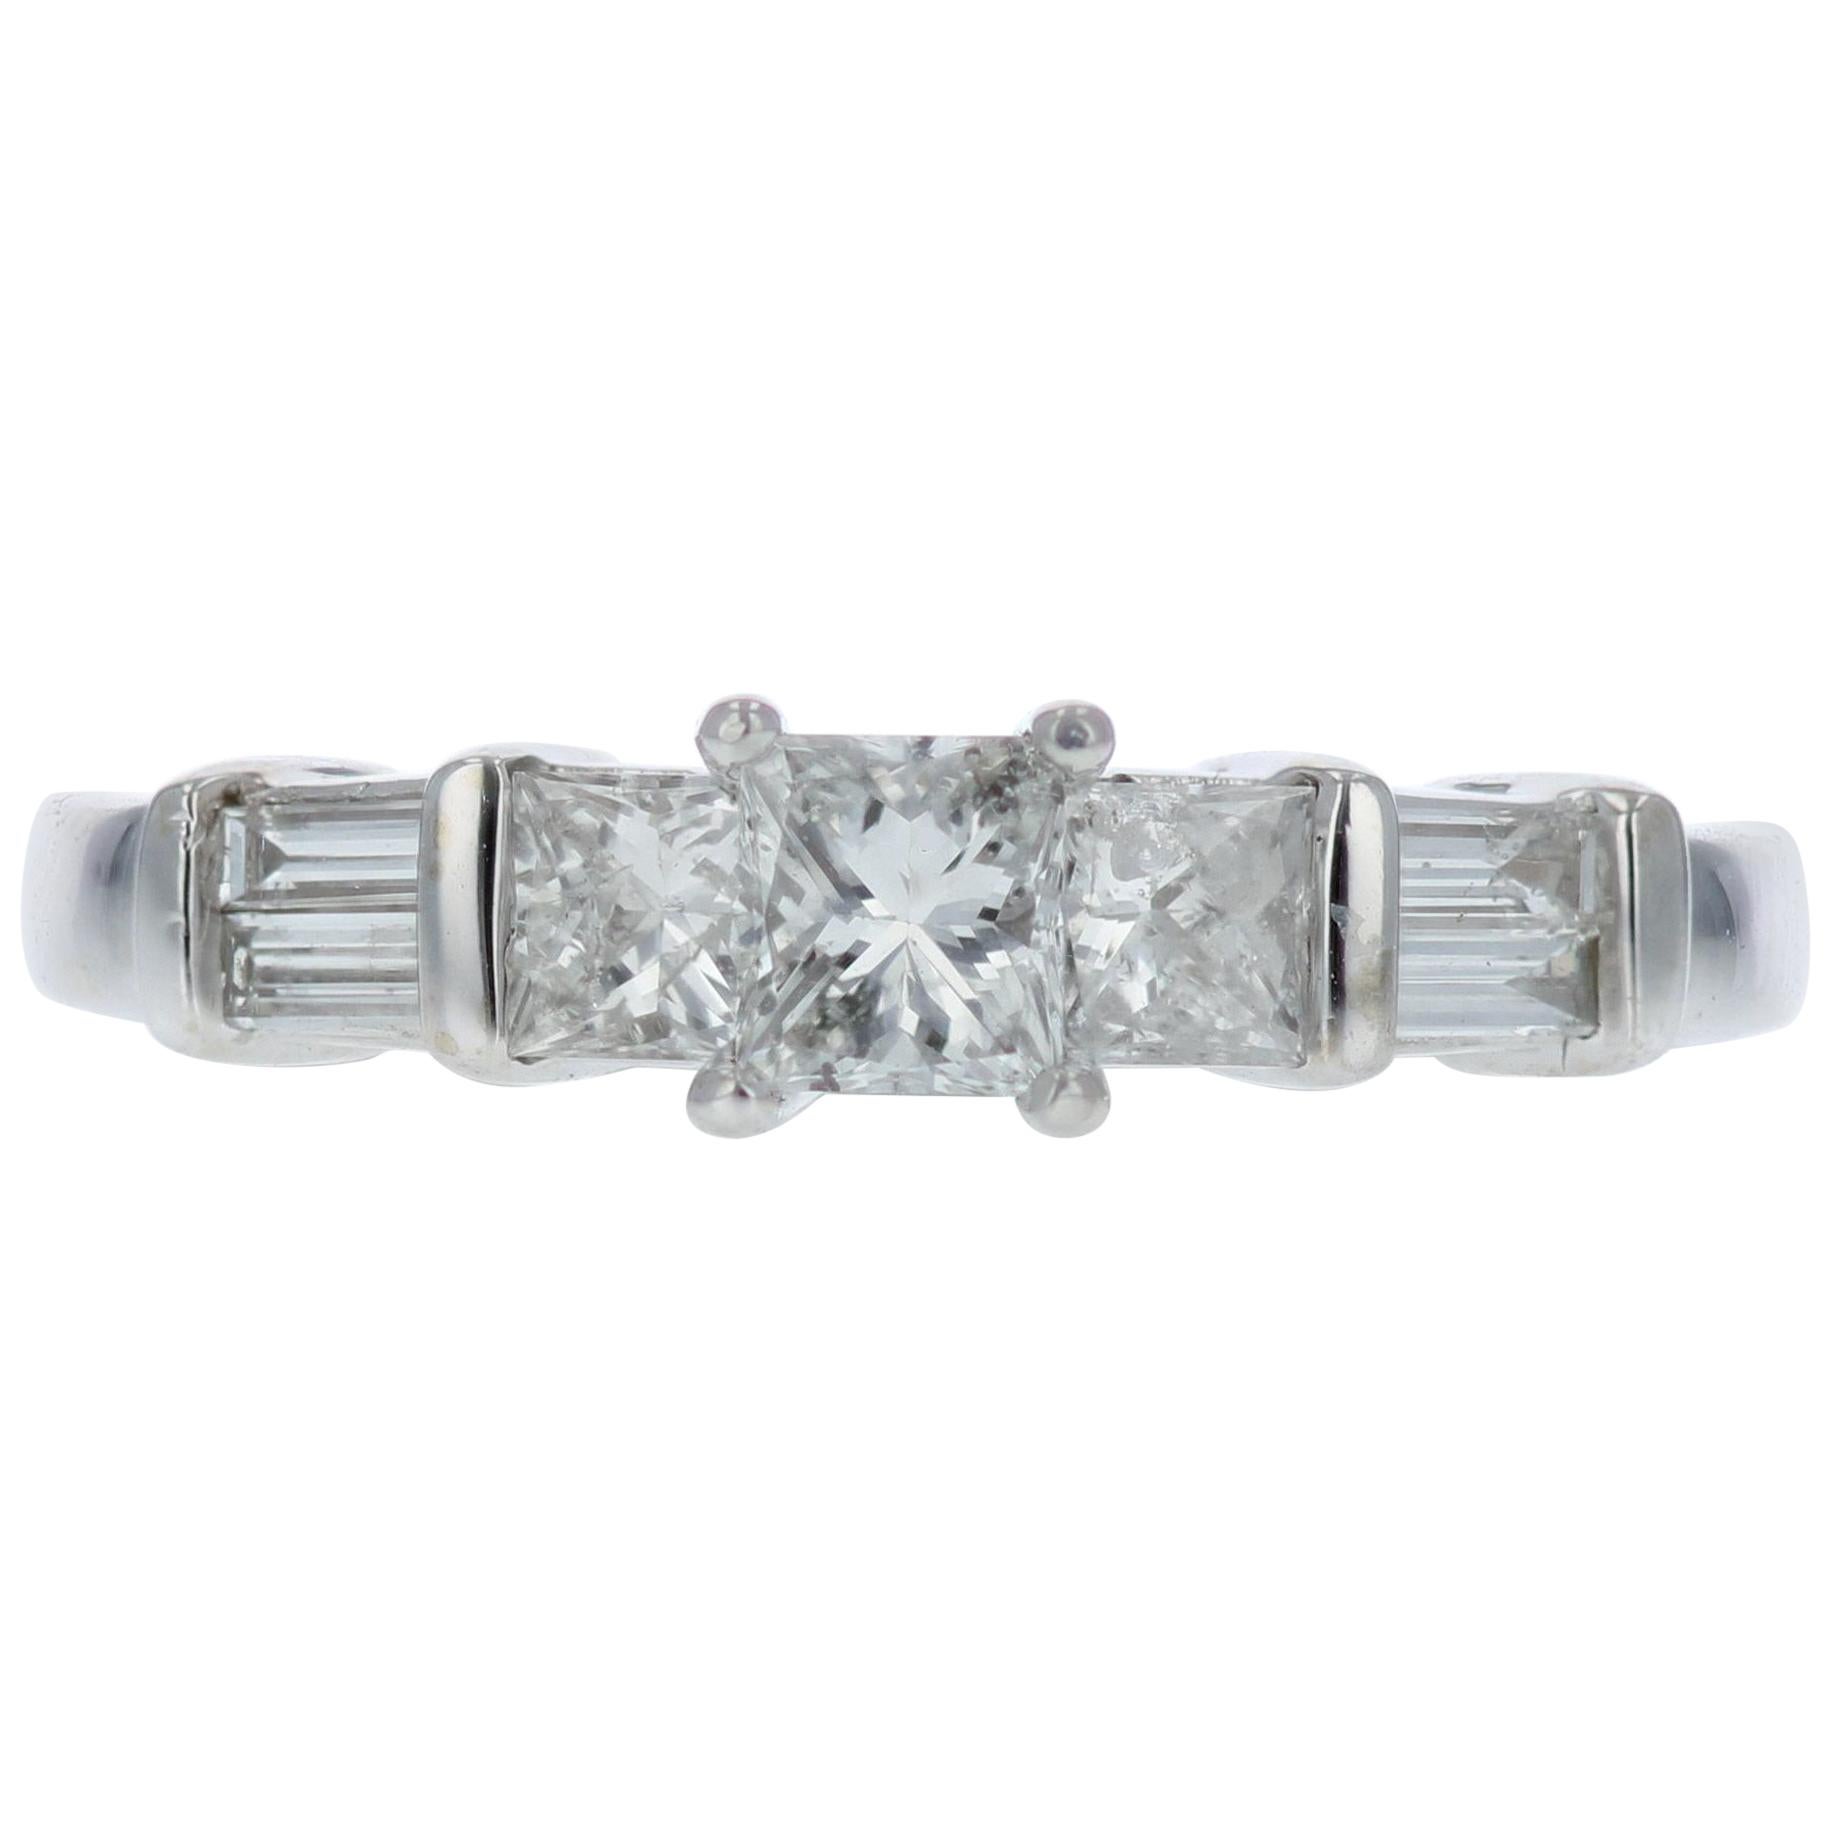 Princess-Cut Diamond Engagement Ring with Baguette Diamond Details